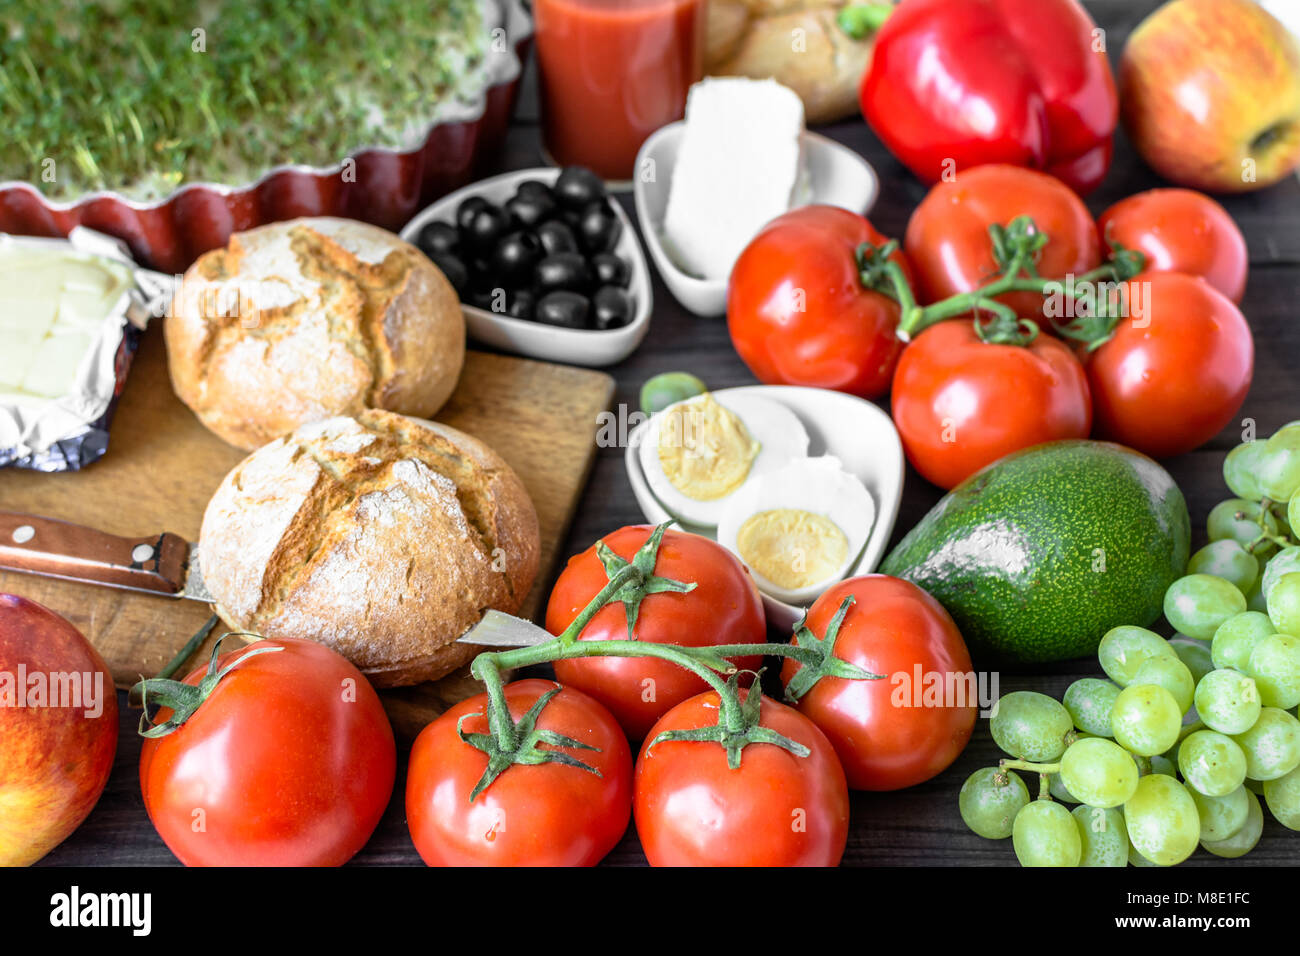 Petit-déjeuner sain ingrédients de la nourriture végétarienne, fruits et légumes Banque D'Images